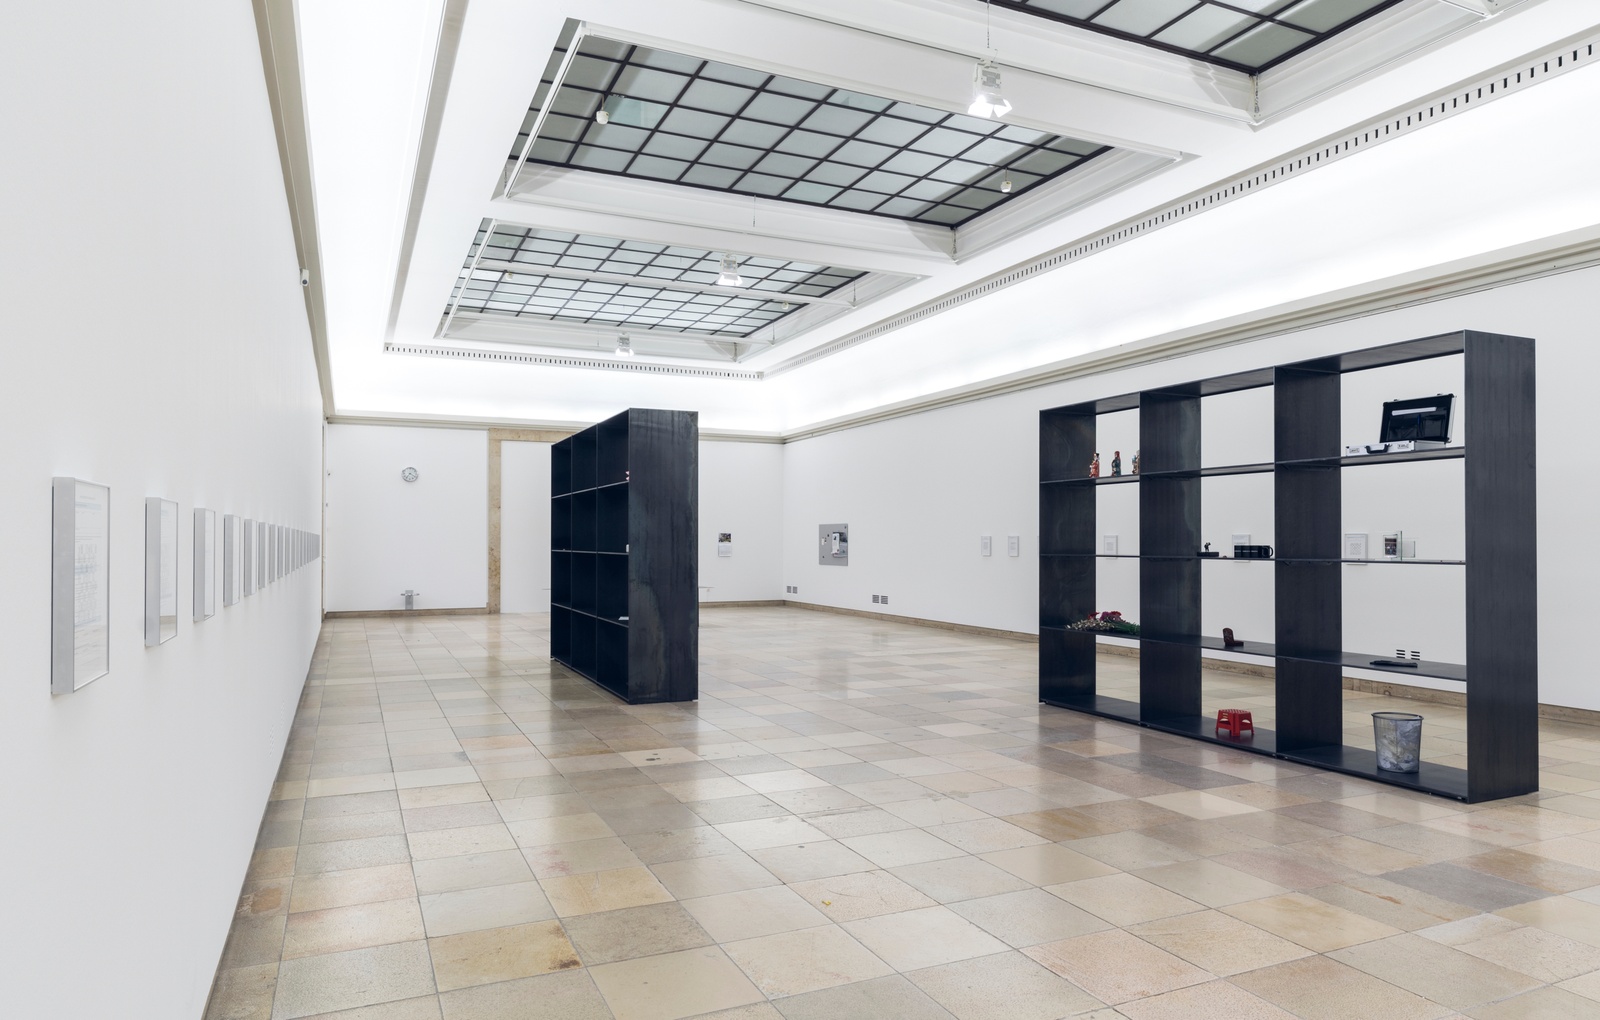 Installation view, Sung Tieu, Zugzwang, Haus der Kunst, Munich, 31 January - 30 August 2020